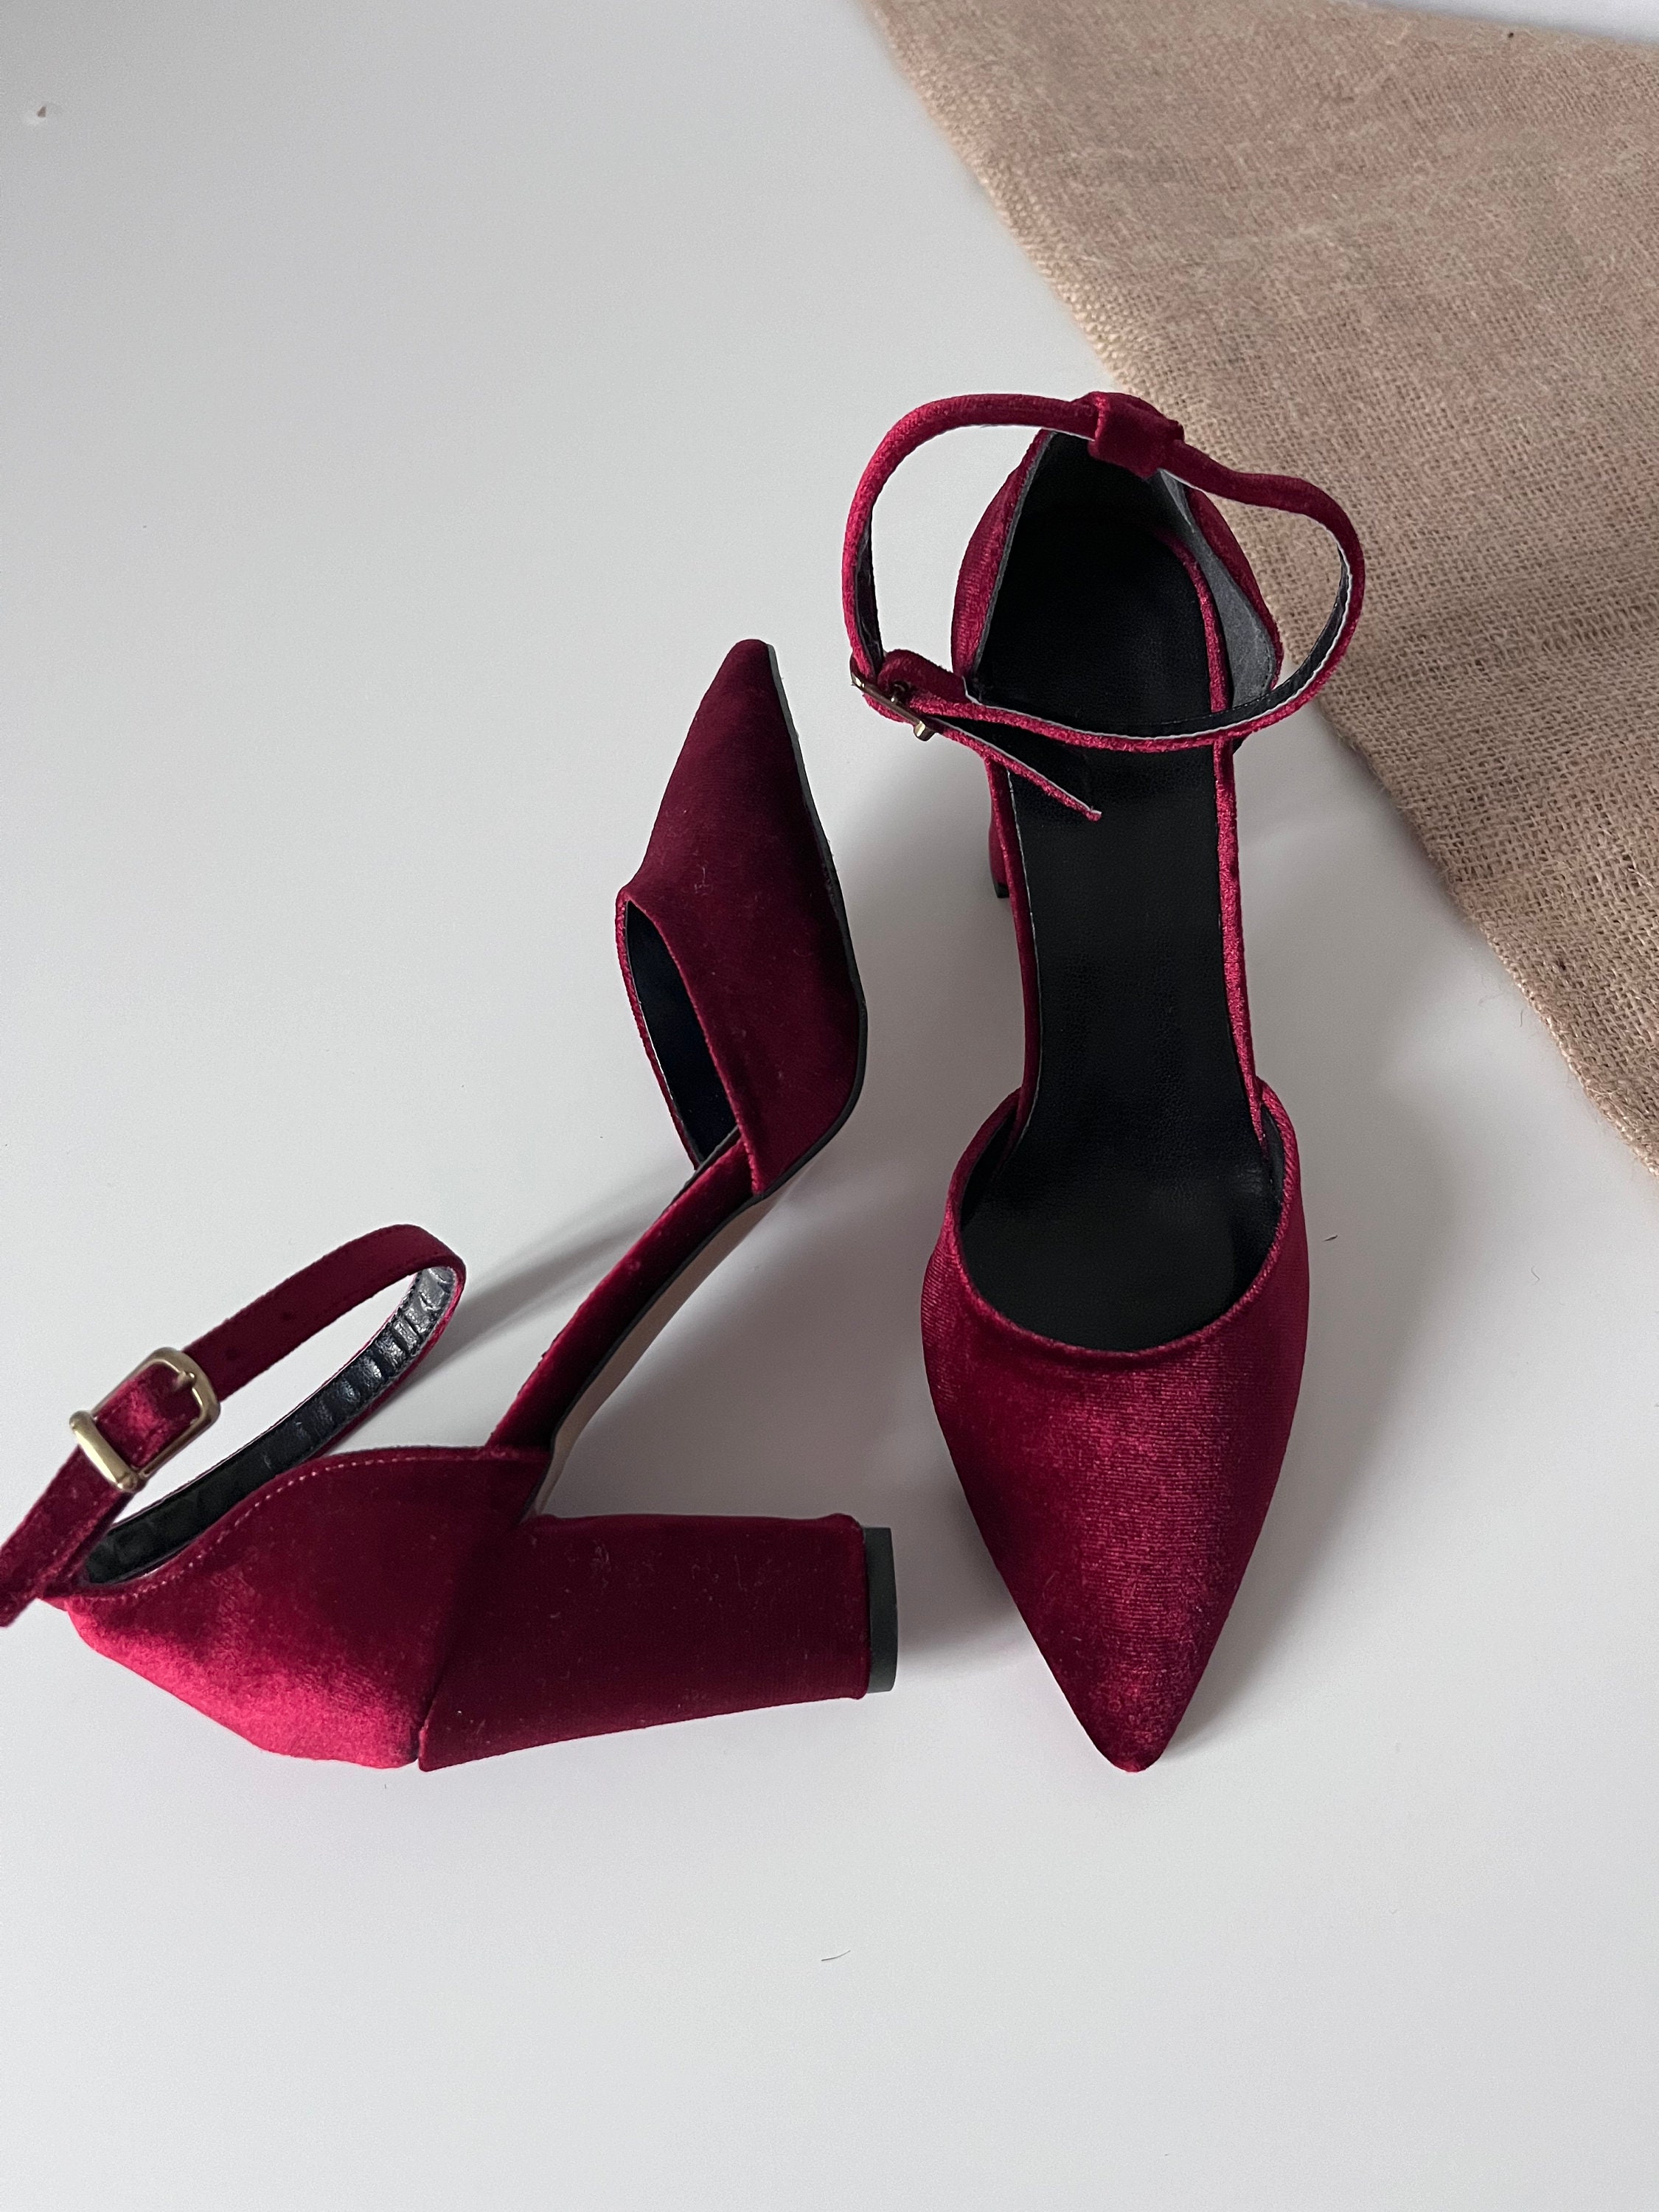 Salvatore Ferragamo Dark Red Croc Embossed Leather Low Block Heels Pumps  Size 7C | eBay